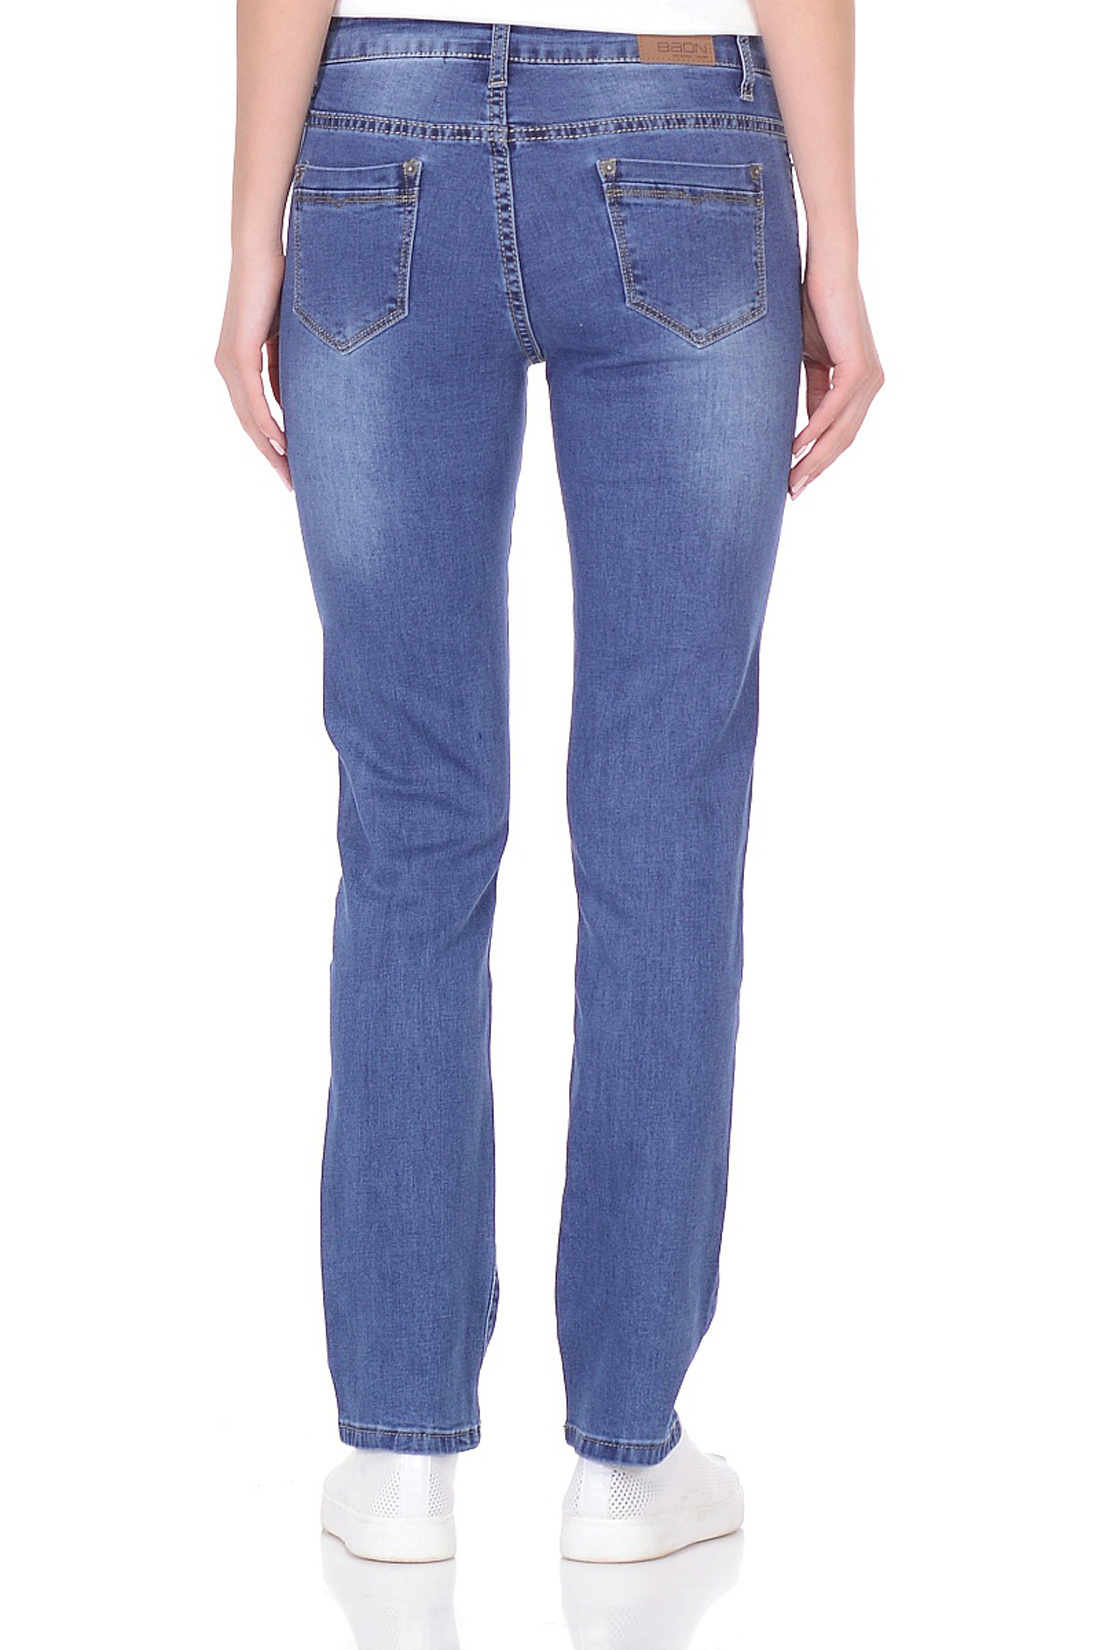 Прямые джинсы (арт. baon B308014), размер 30, цвет blue denim#голубой Прямые джинсы (арт. baon B308014) - фото 2